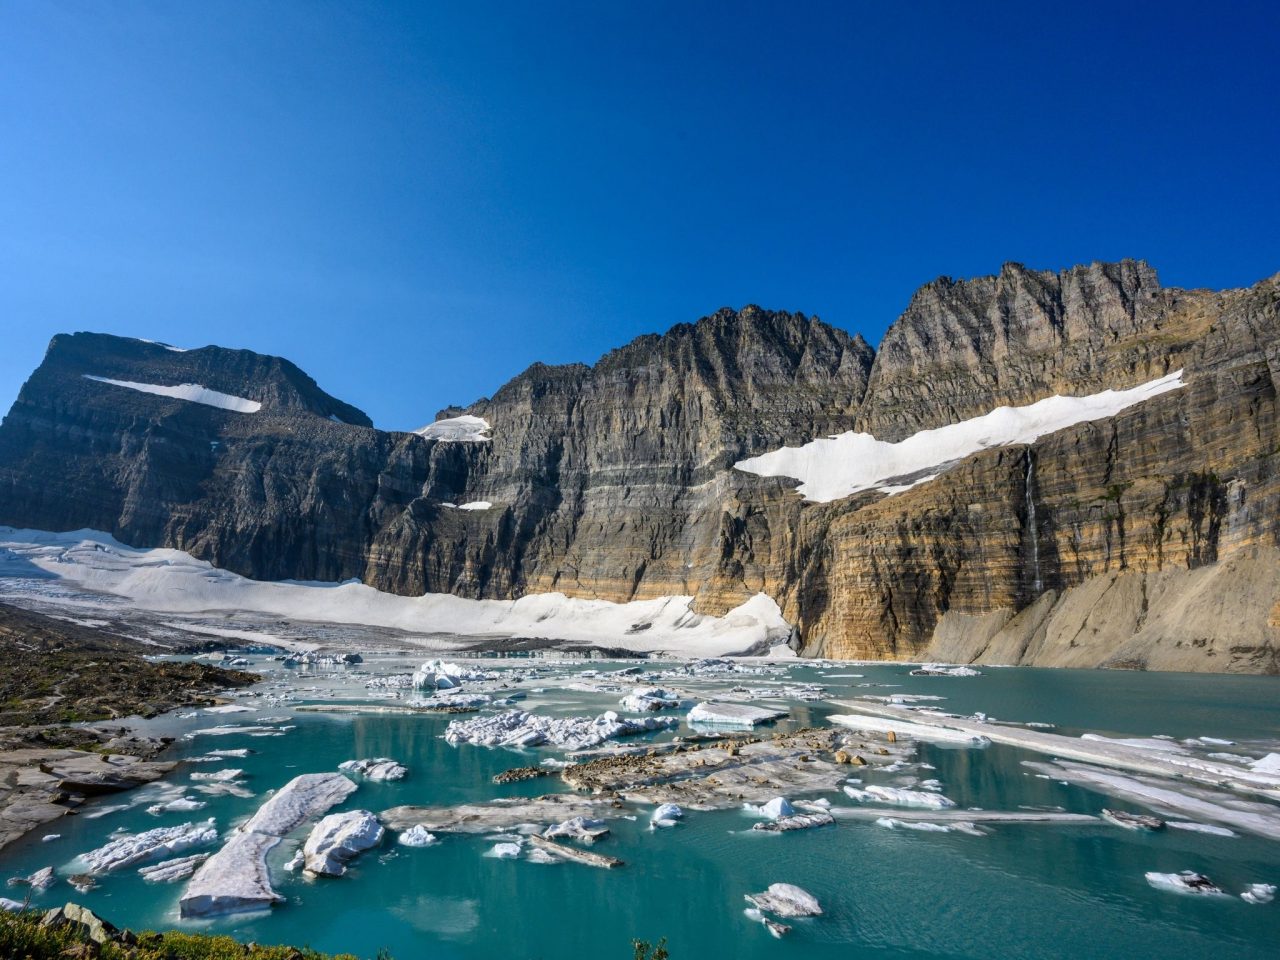 Grinnell Glacier Glacier National Park via Canva